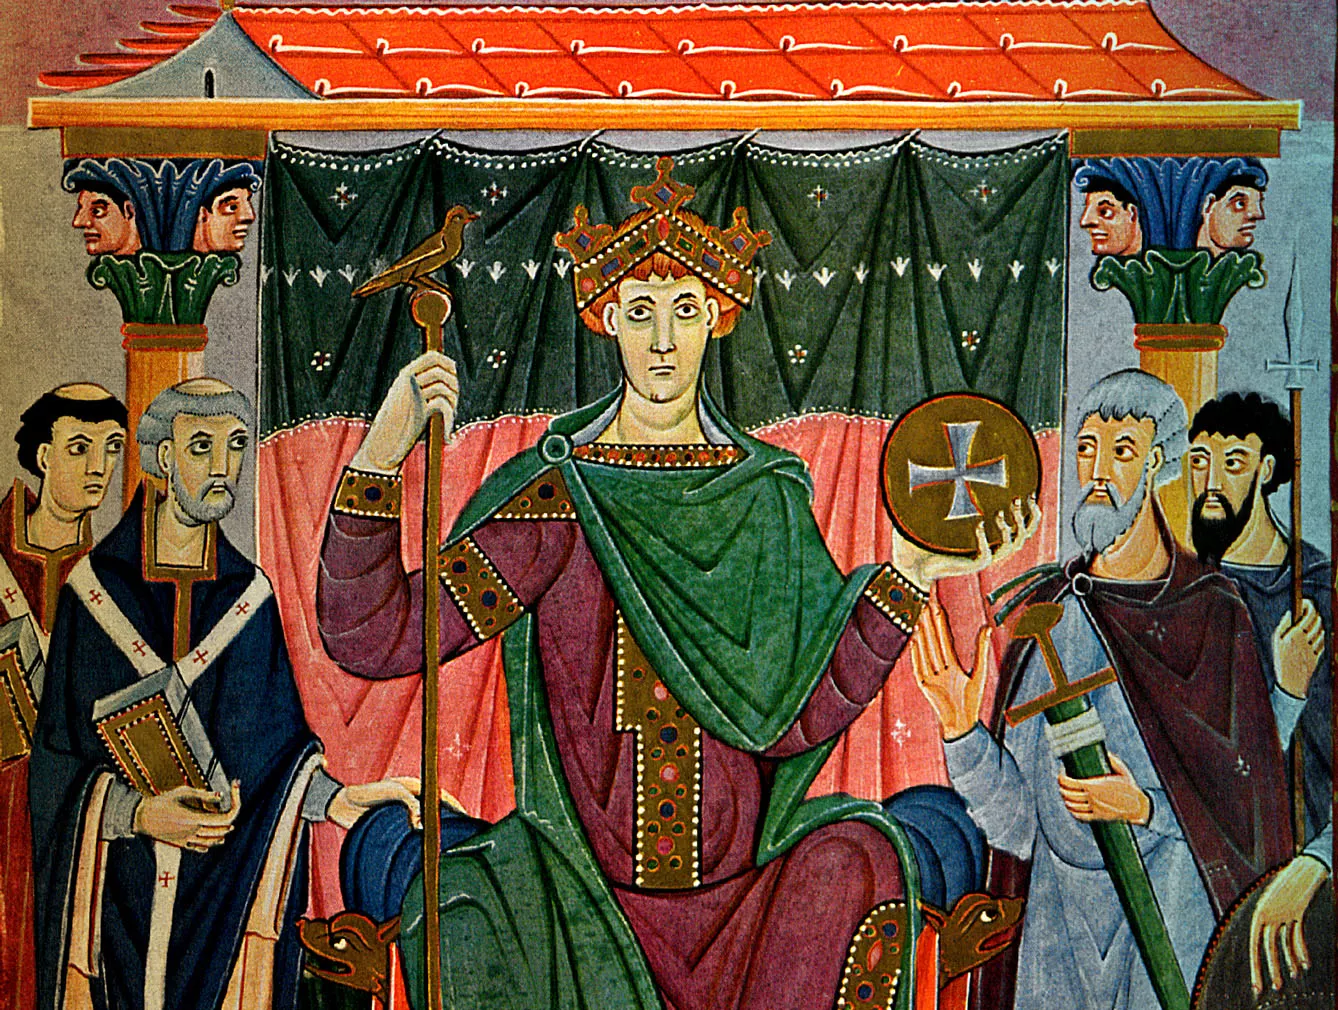 Otton III